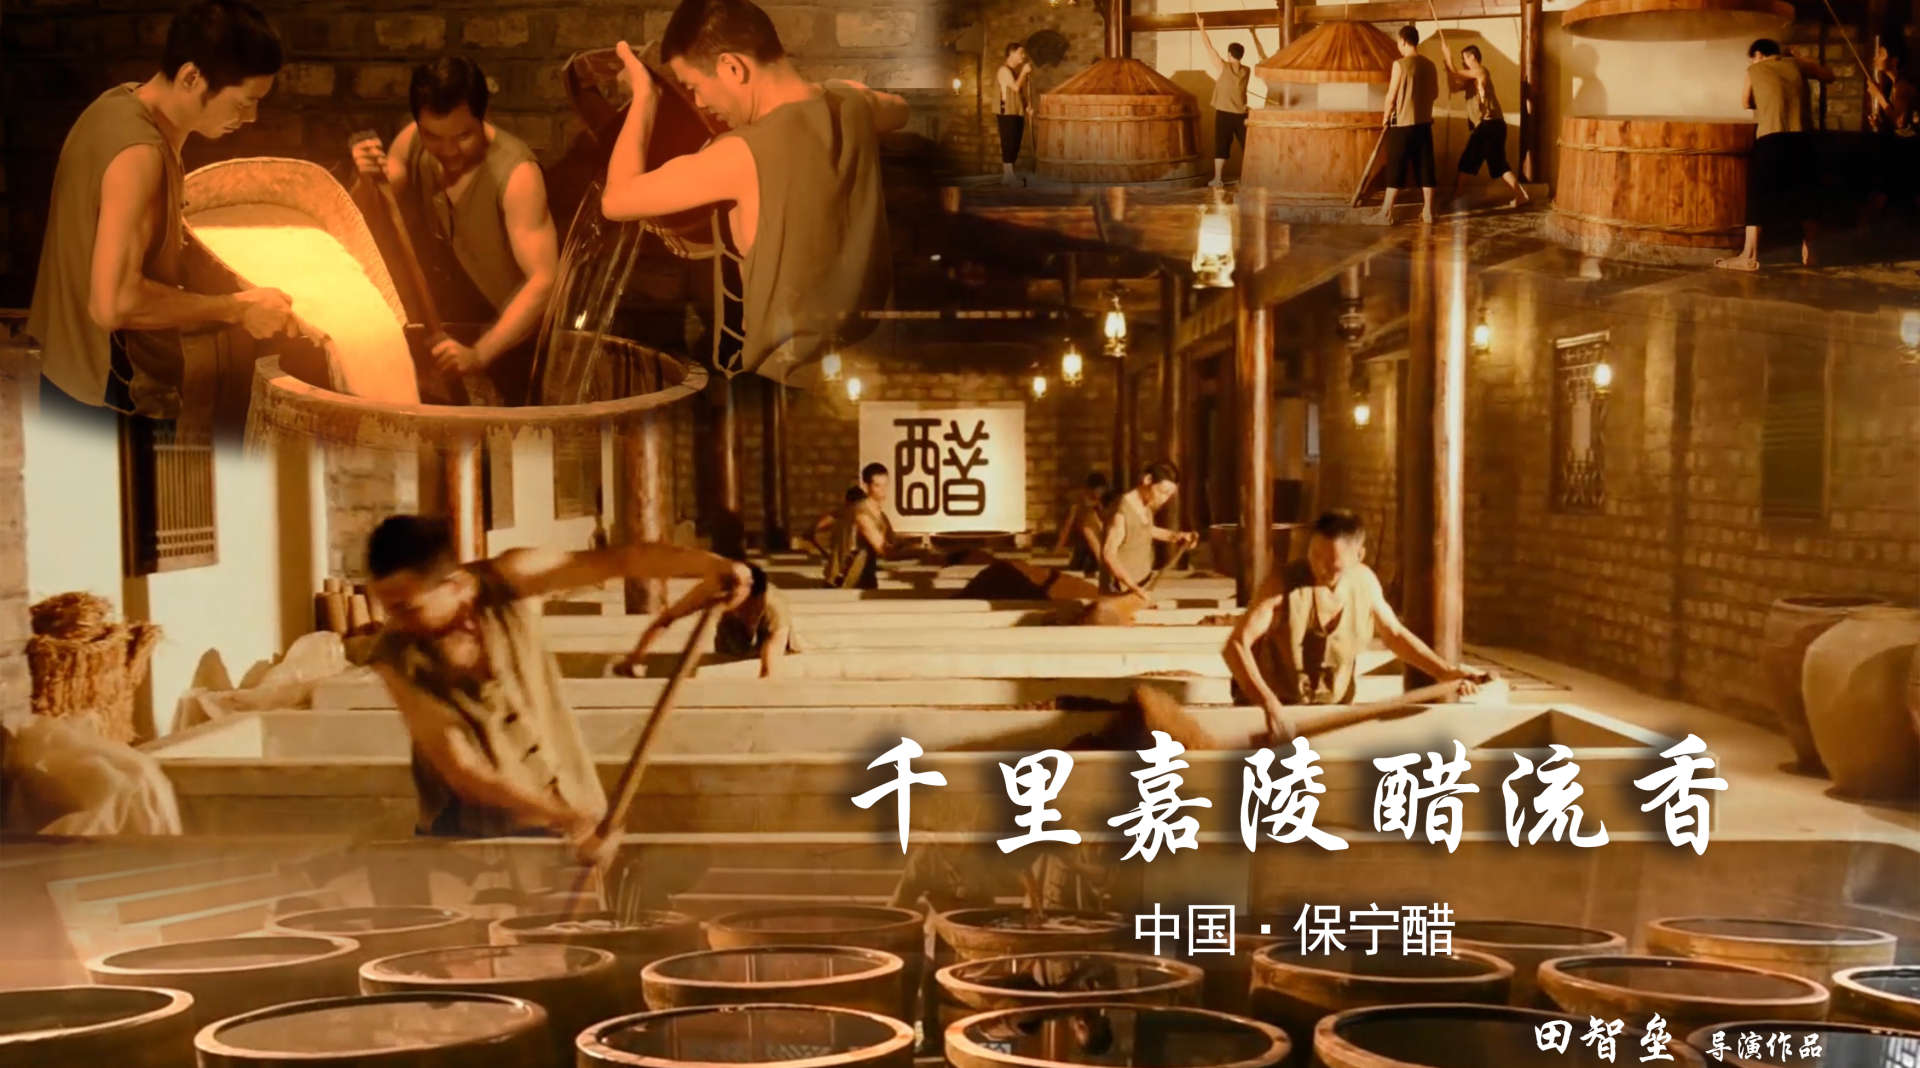 中国保宁醋——《千里嘉陵醋流香》